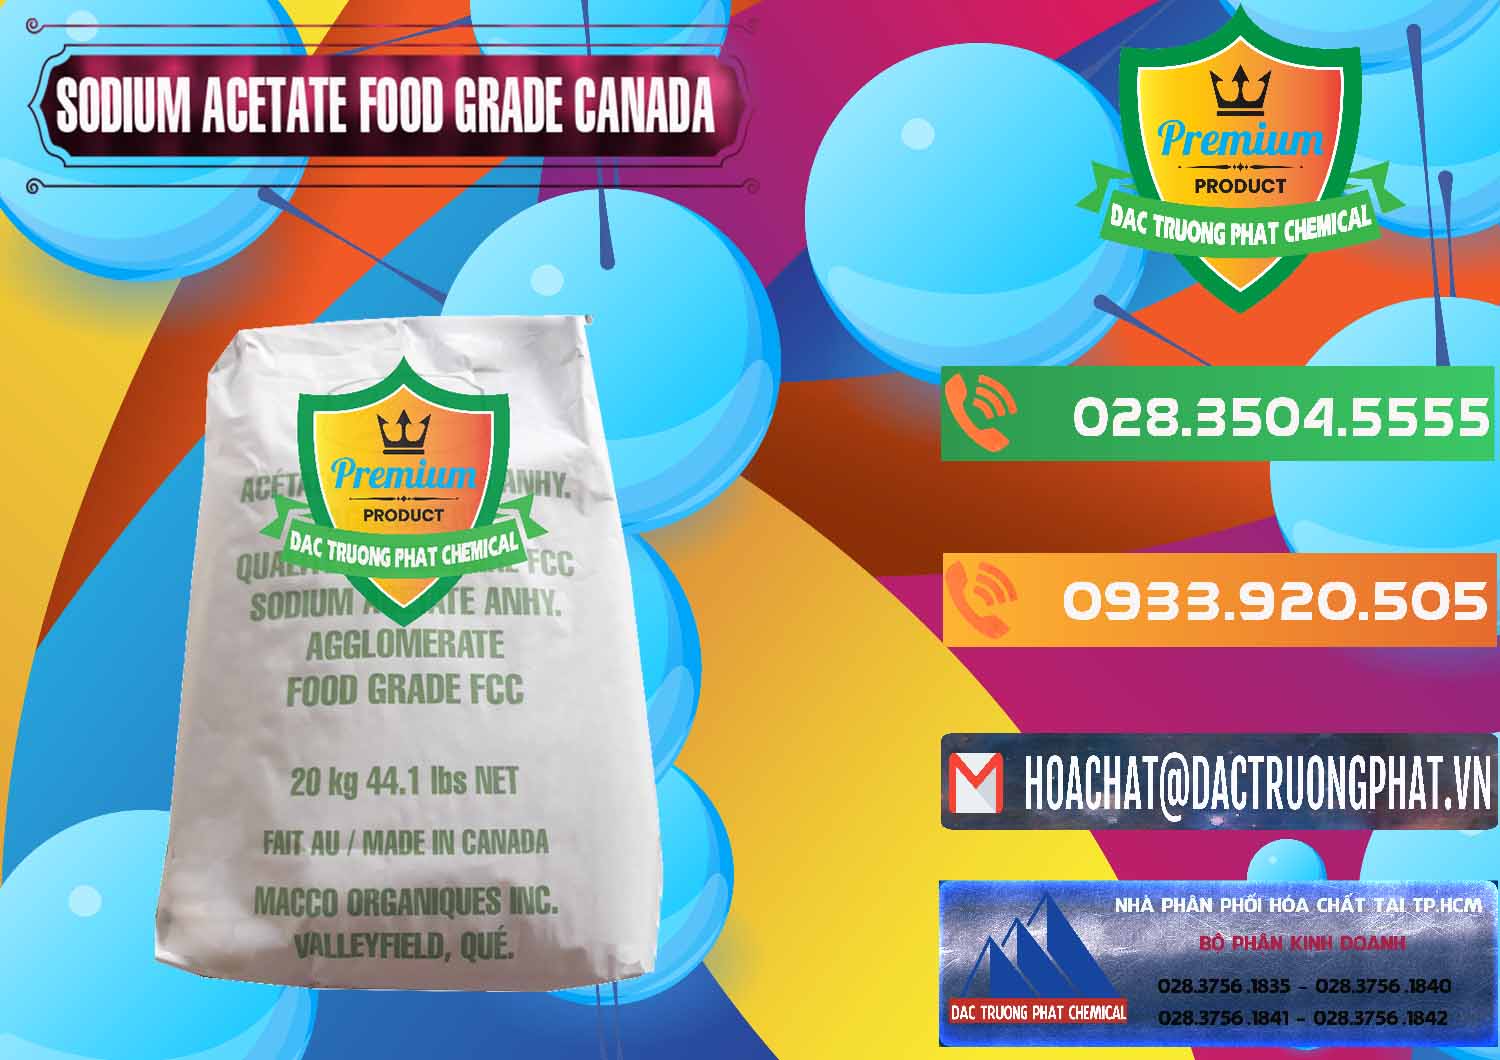 Cty kinh doanh - bán Sodium Acetate - Natri Acetate Food Grade Canada - 0282 - Cty chuyên phân phối & kinh doanh hóa chất tại TP.HCM - hoachatxulynuoc.com.vn